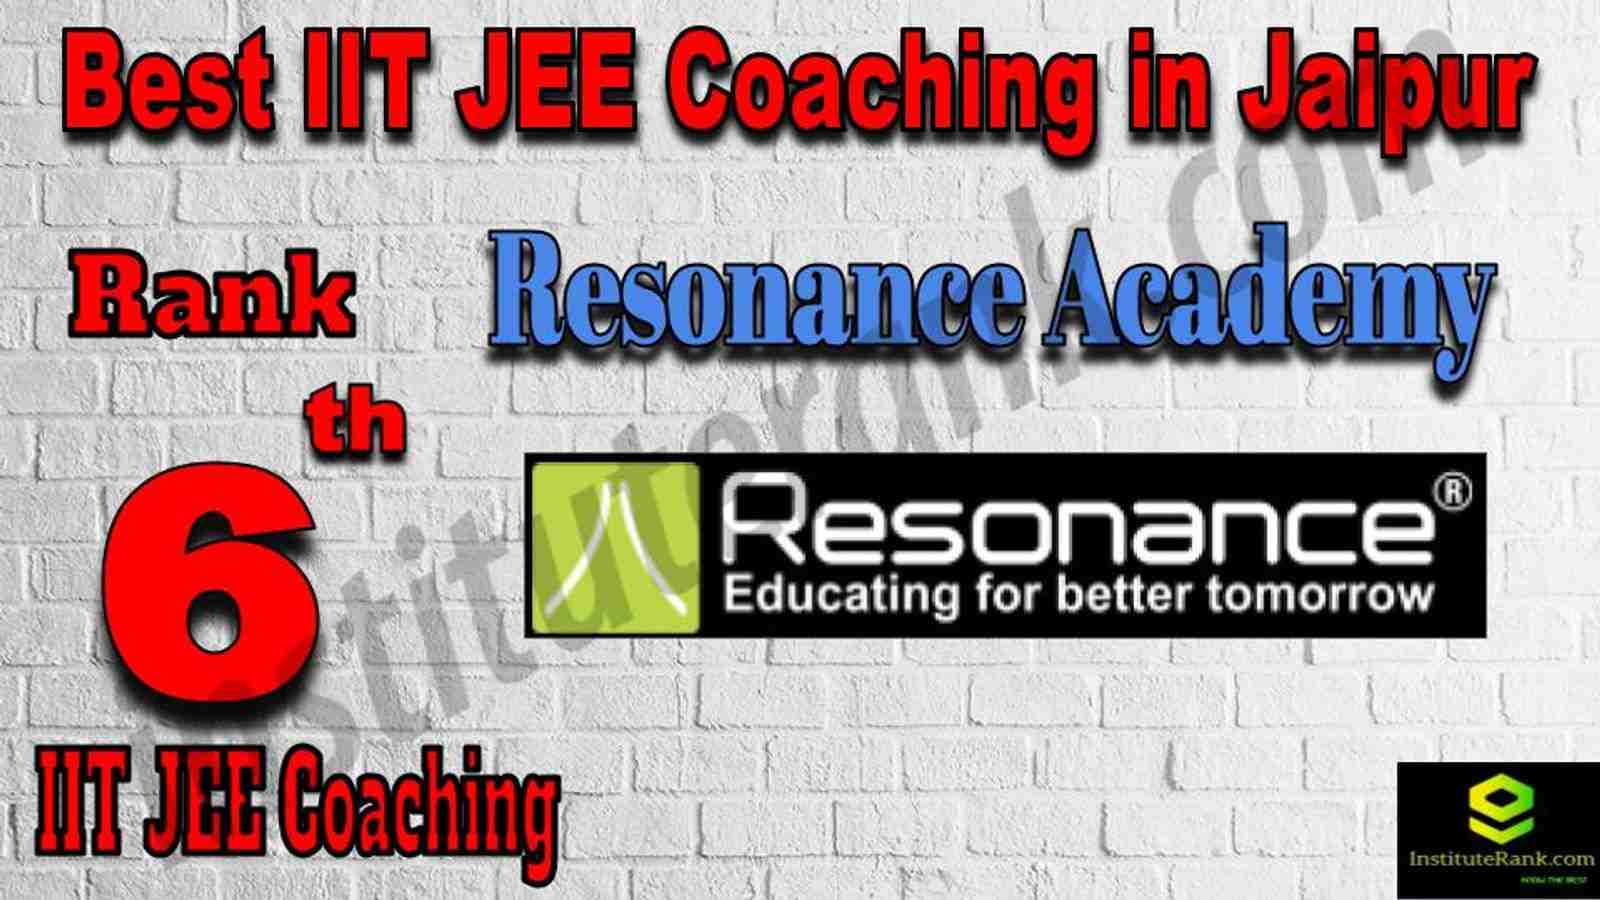 6th Best IIT JEE Coaching in Jaipur